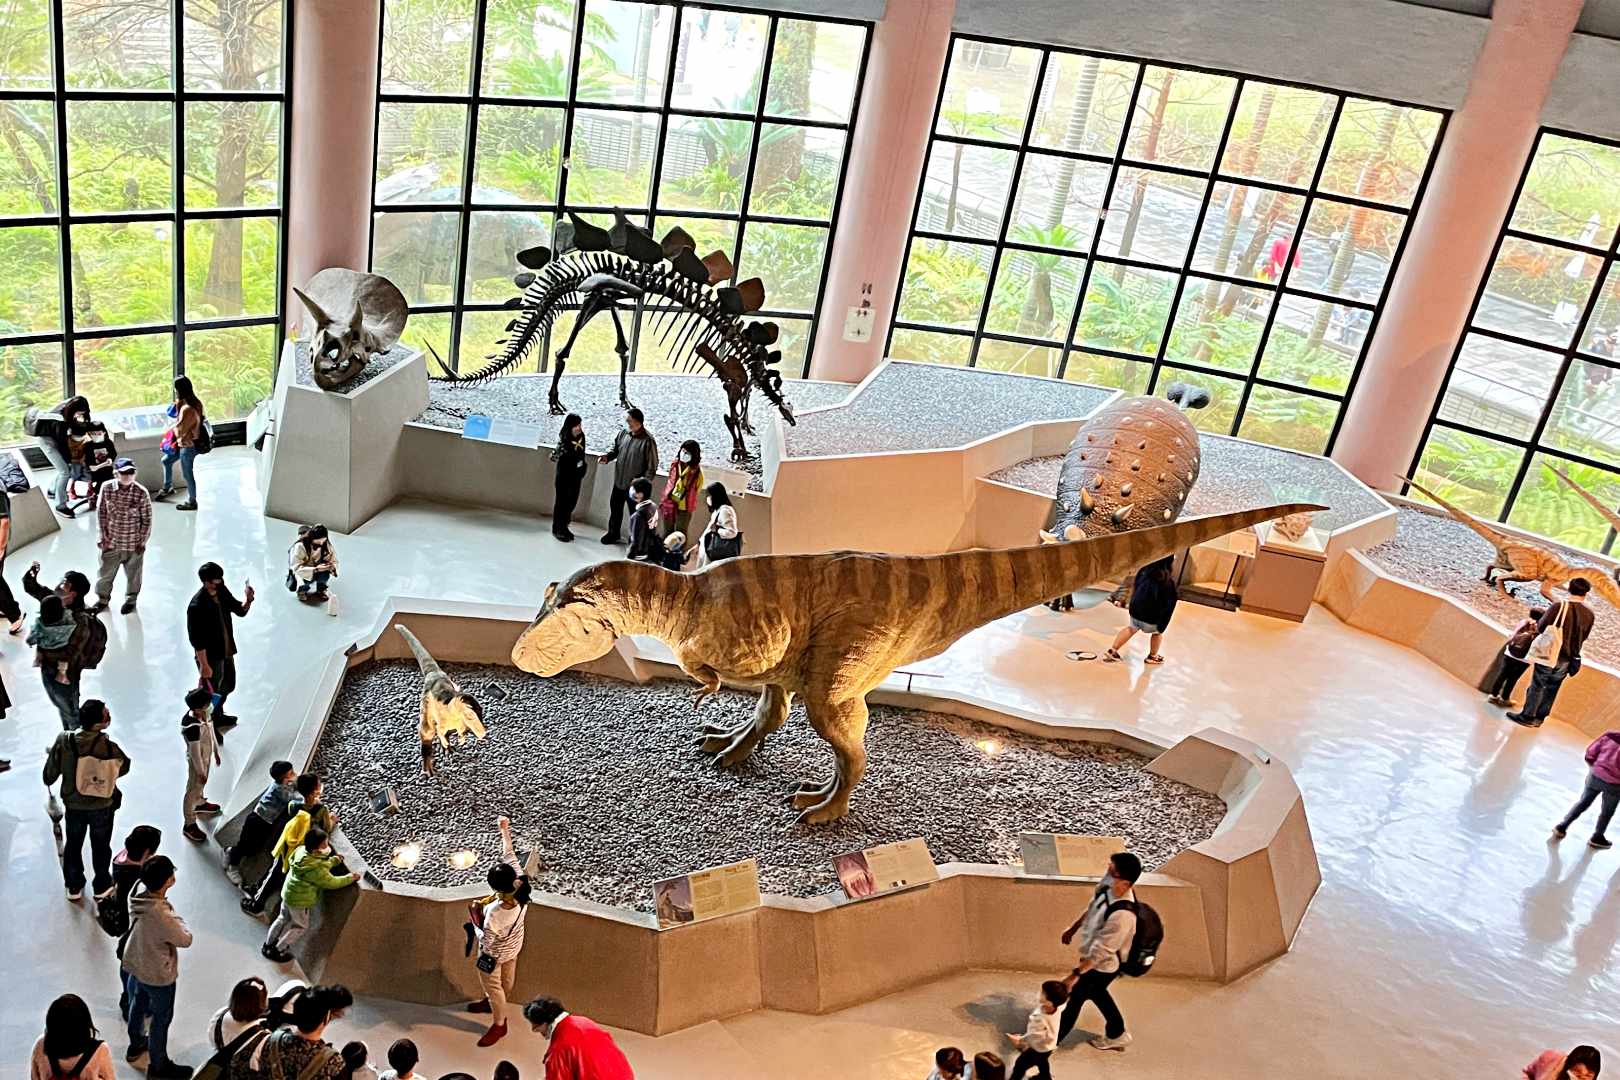 國立自然科學博物館, 國立自然科學博物館 恐龍, 科博館, 科博館 恐龍, 台中景點